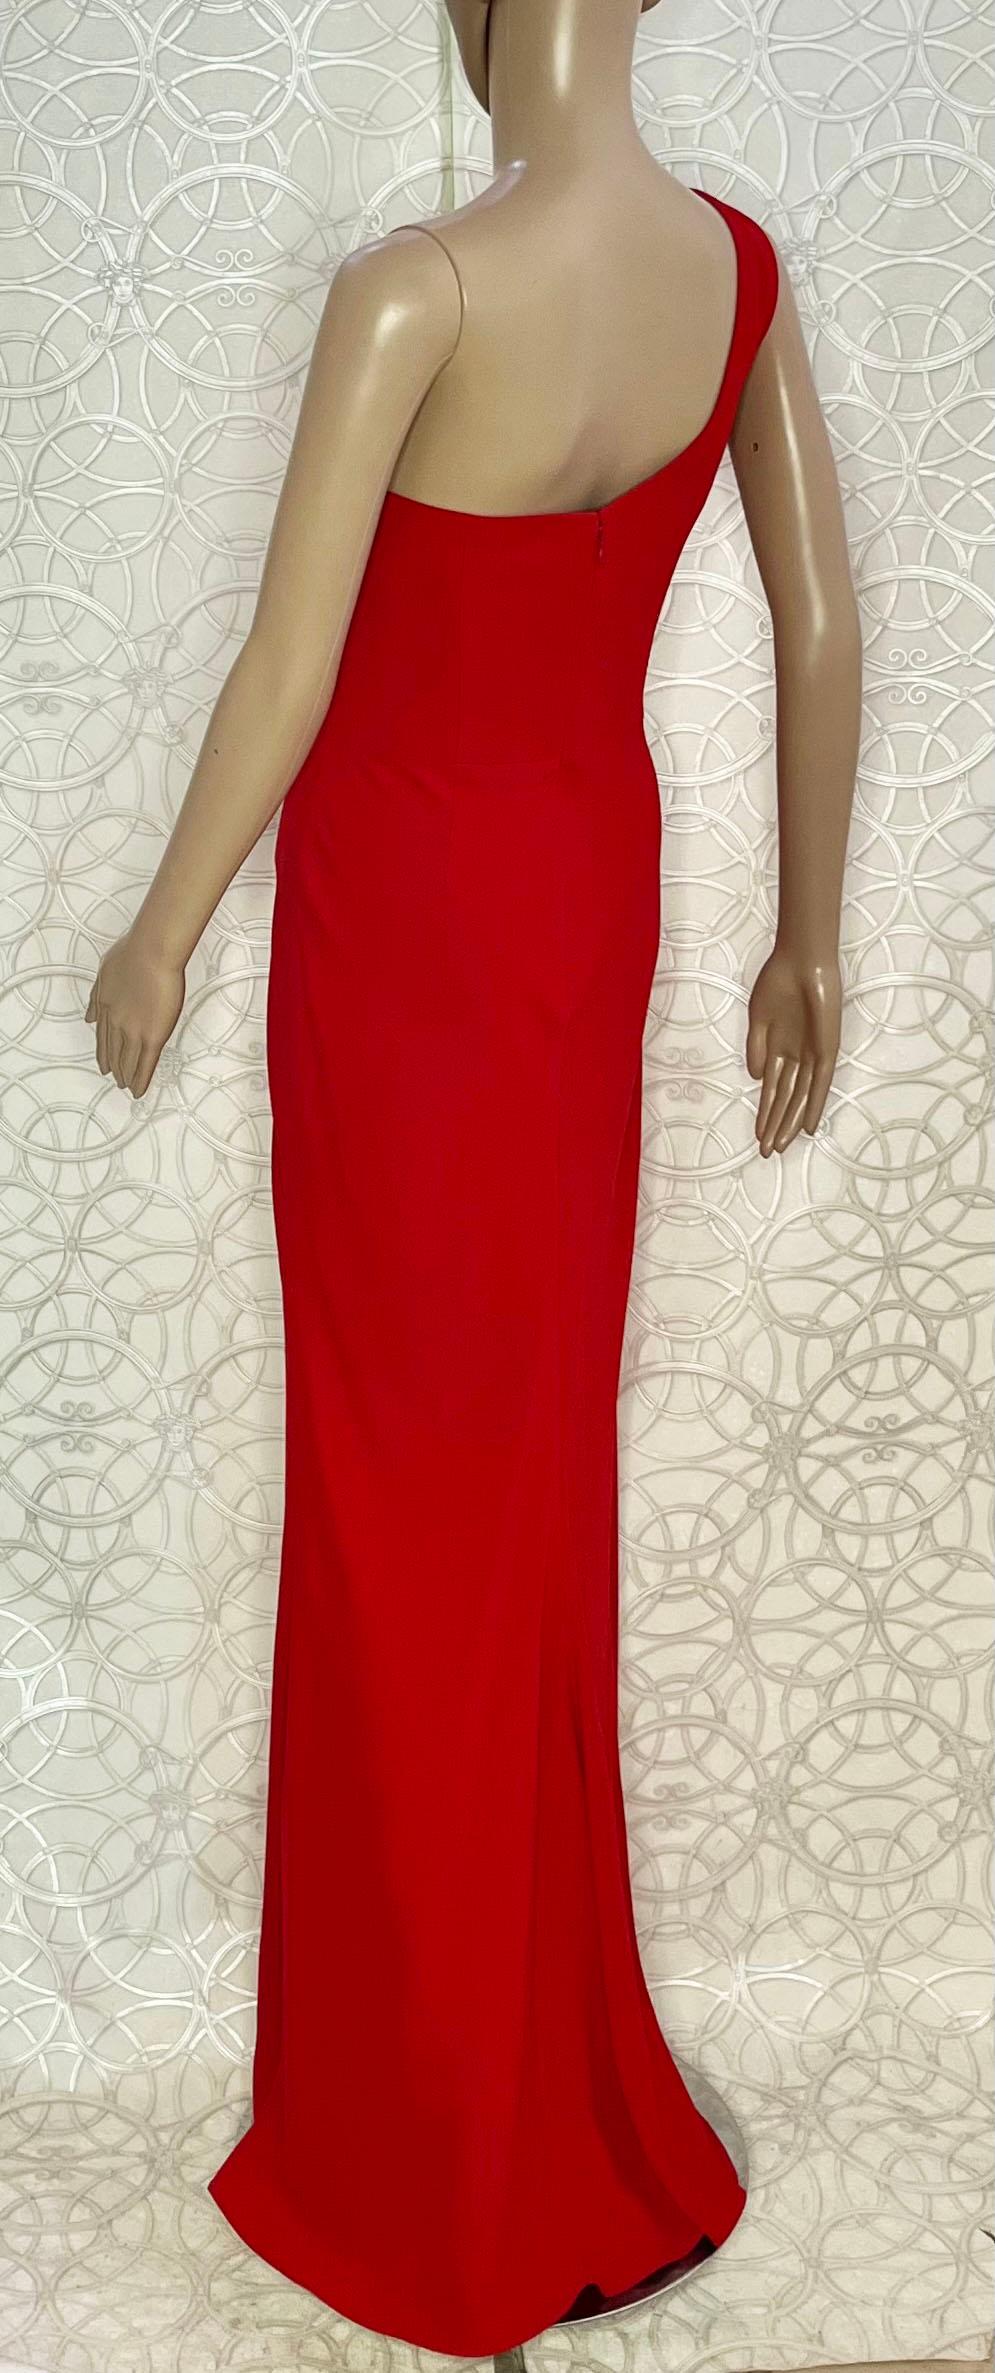 Women's ALEXANDER McQueen RED LONG EVENING DRESS size IT 42